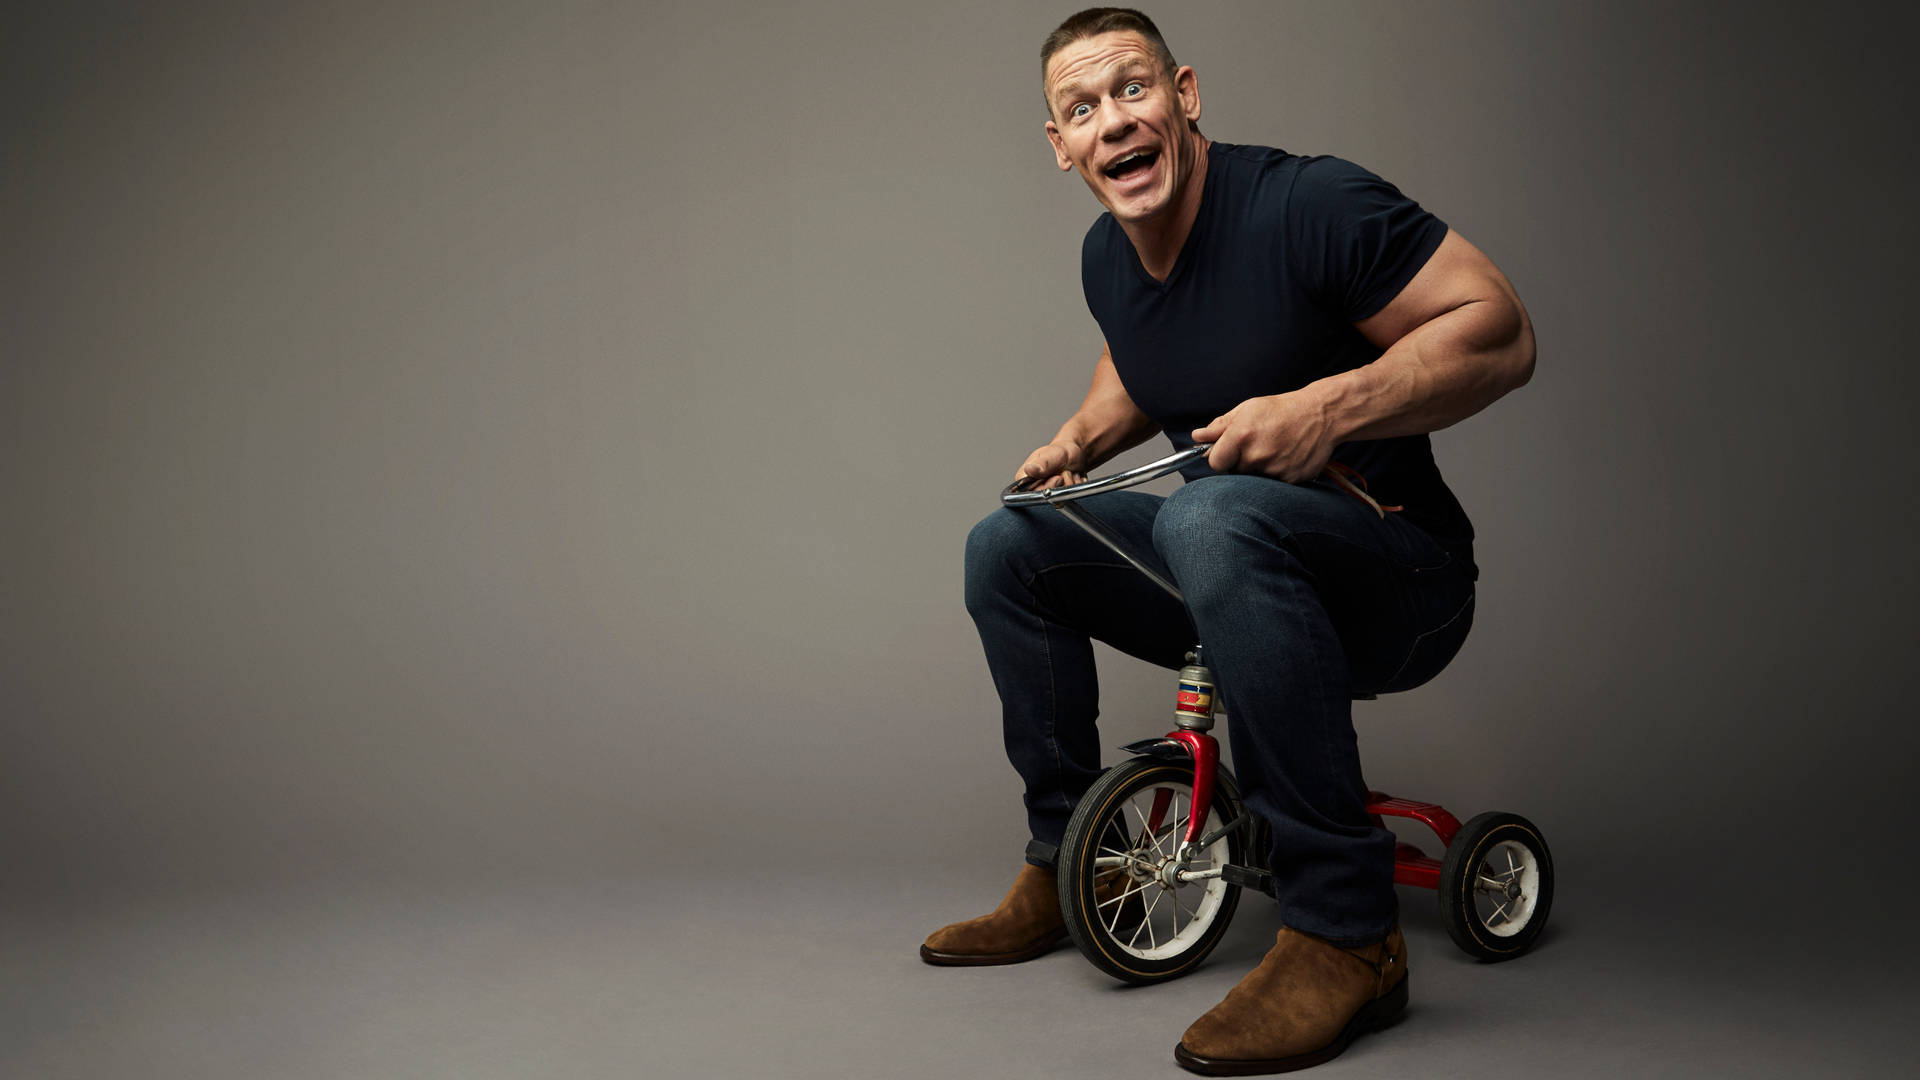 John Cena Riding Mini Bike Background